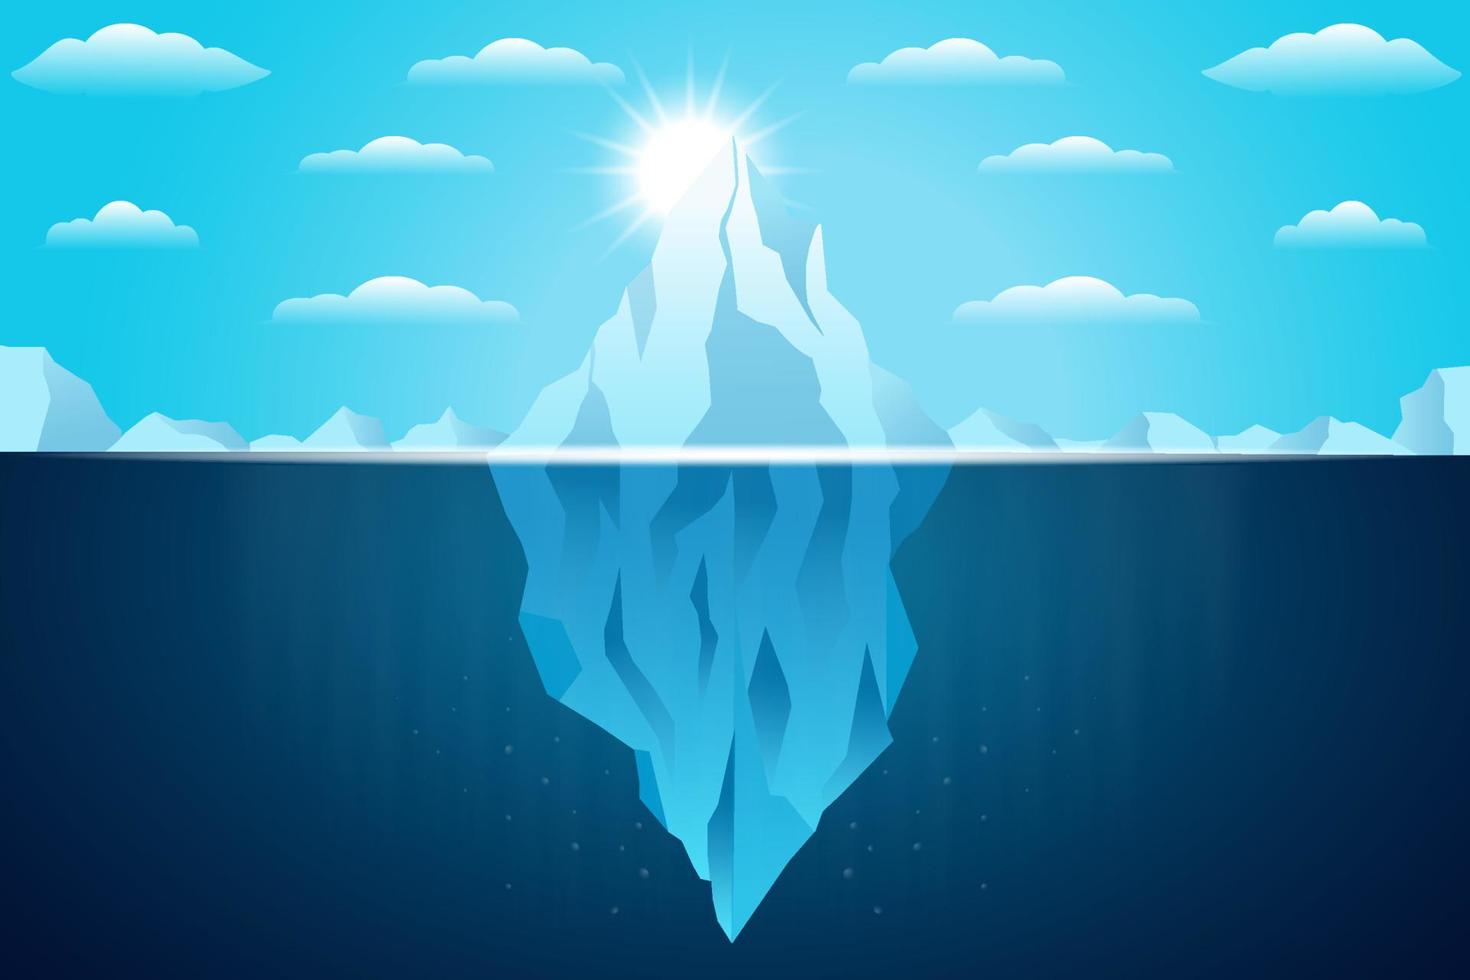 iceberg flutuando na ilustração do oceano com sol brilhante vetor